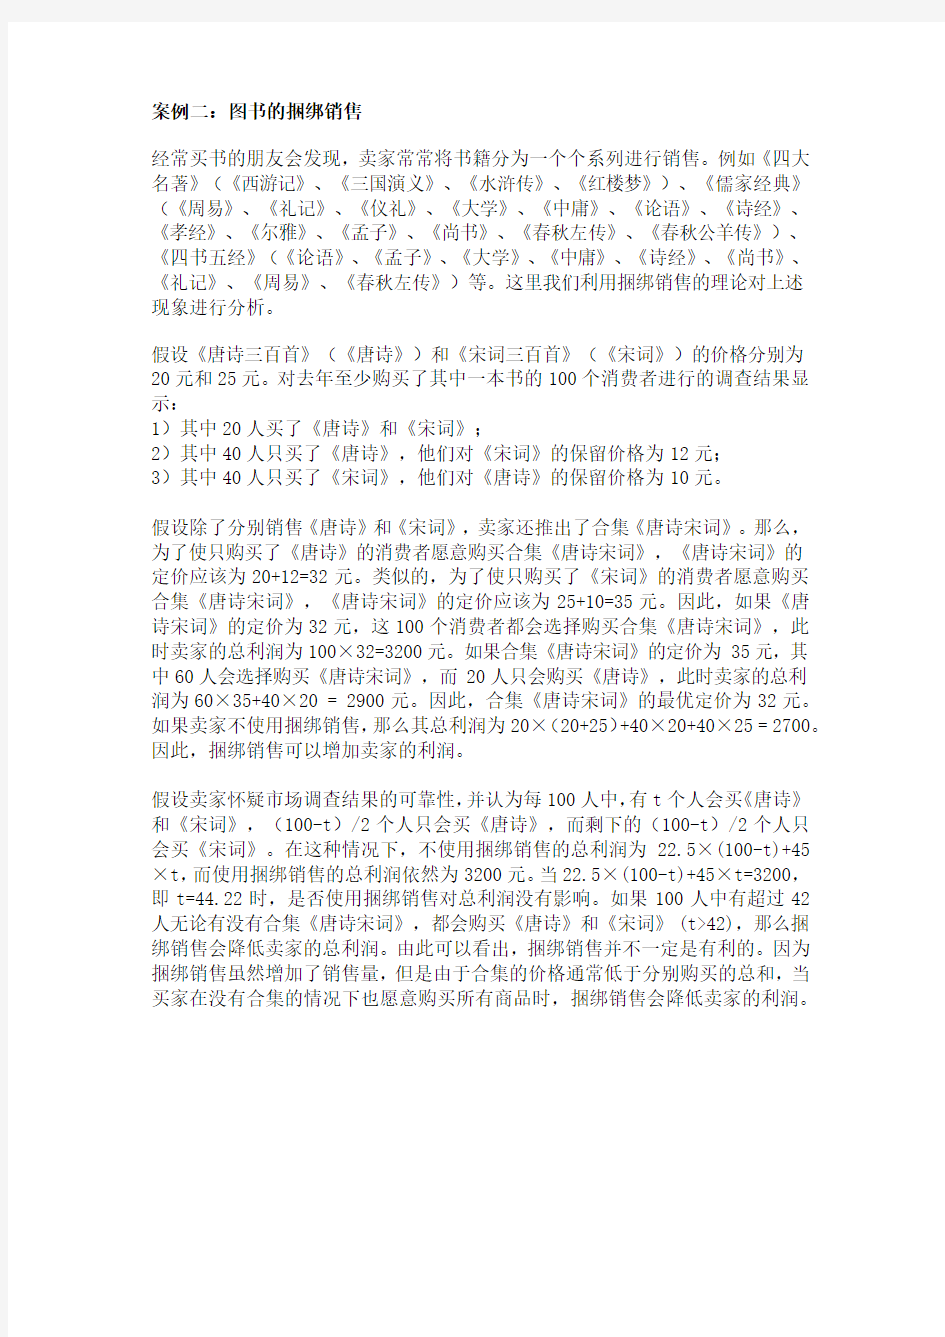 上海财经大学经济学院中级微观经济学案例分析案例一：中国移动通信